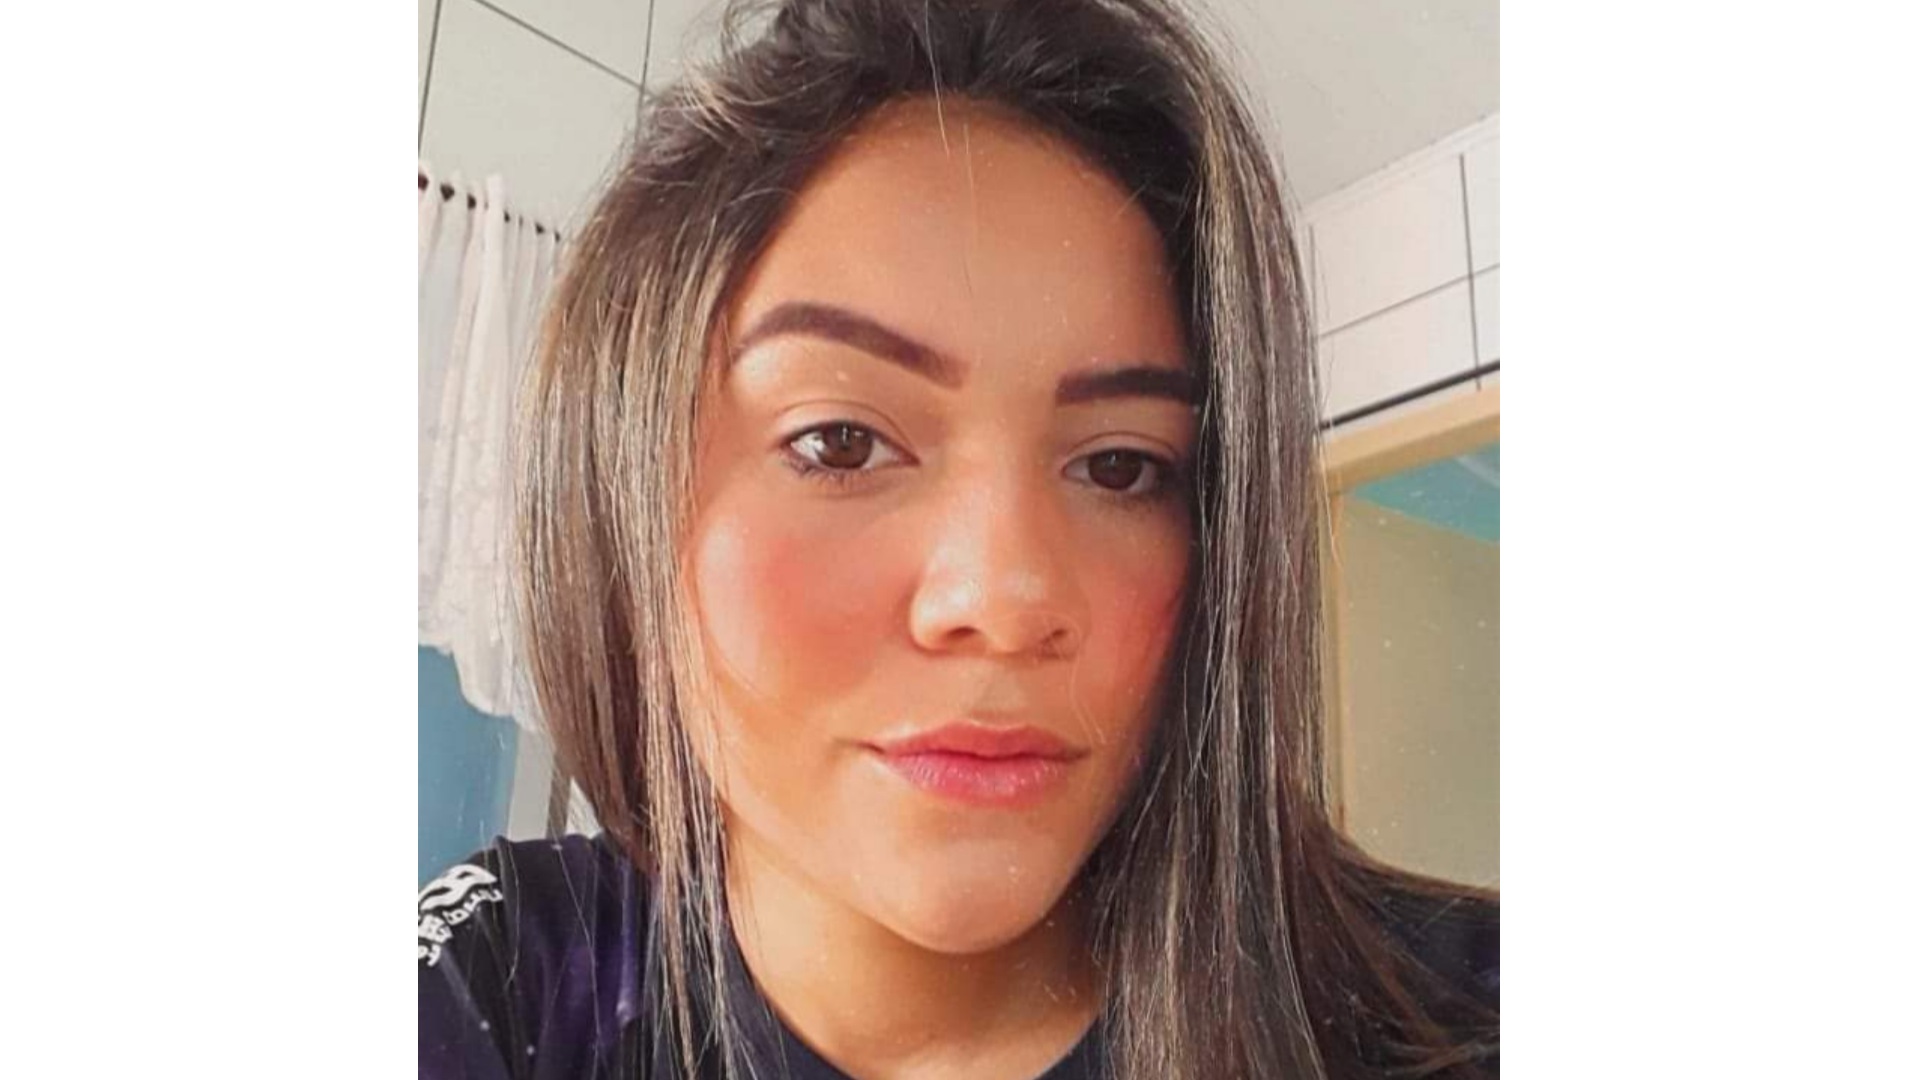 Divulgado os detalhes fúnebres da jovem Camila Farias, vítima de acidente de trânsito em Taió